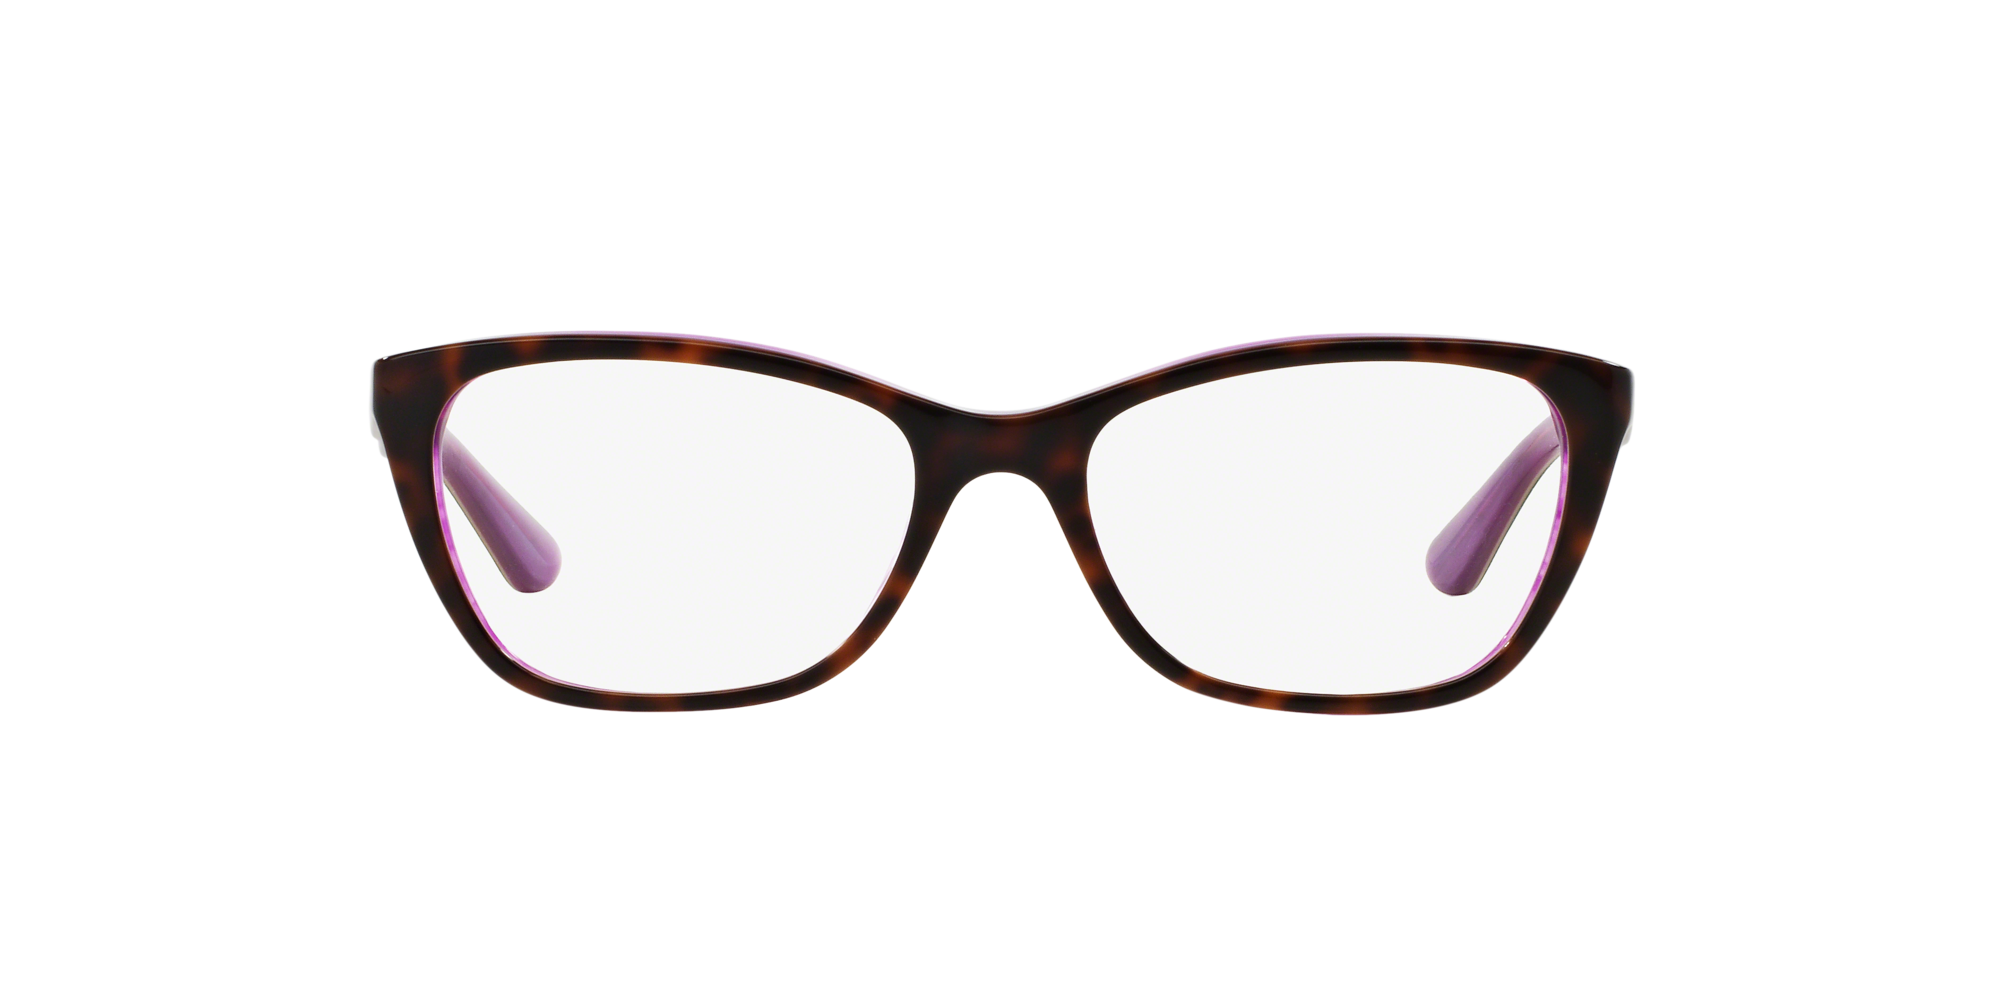 lenscrafters eyeglasses